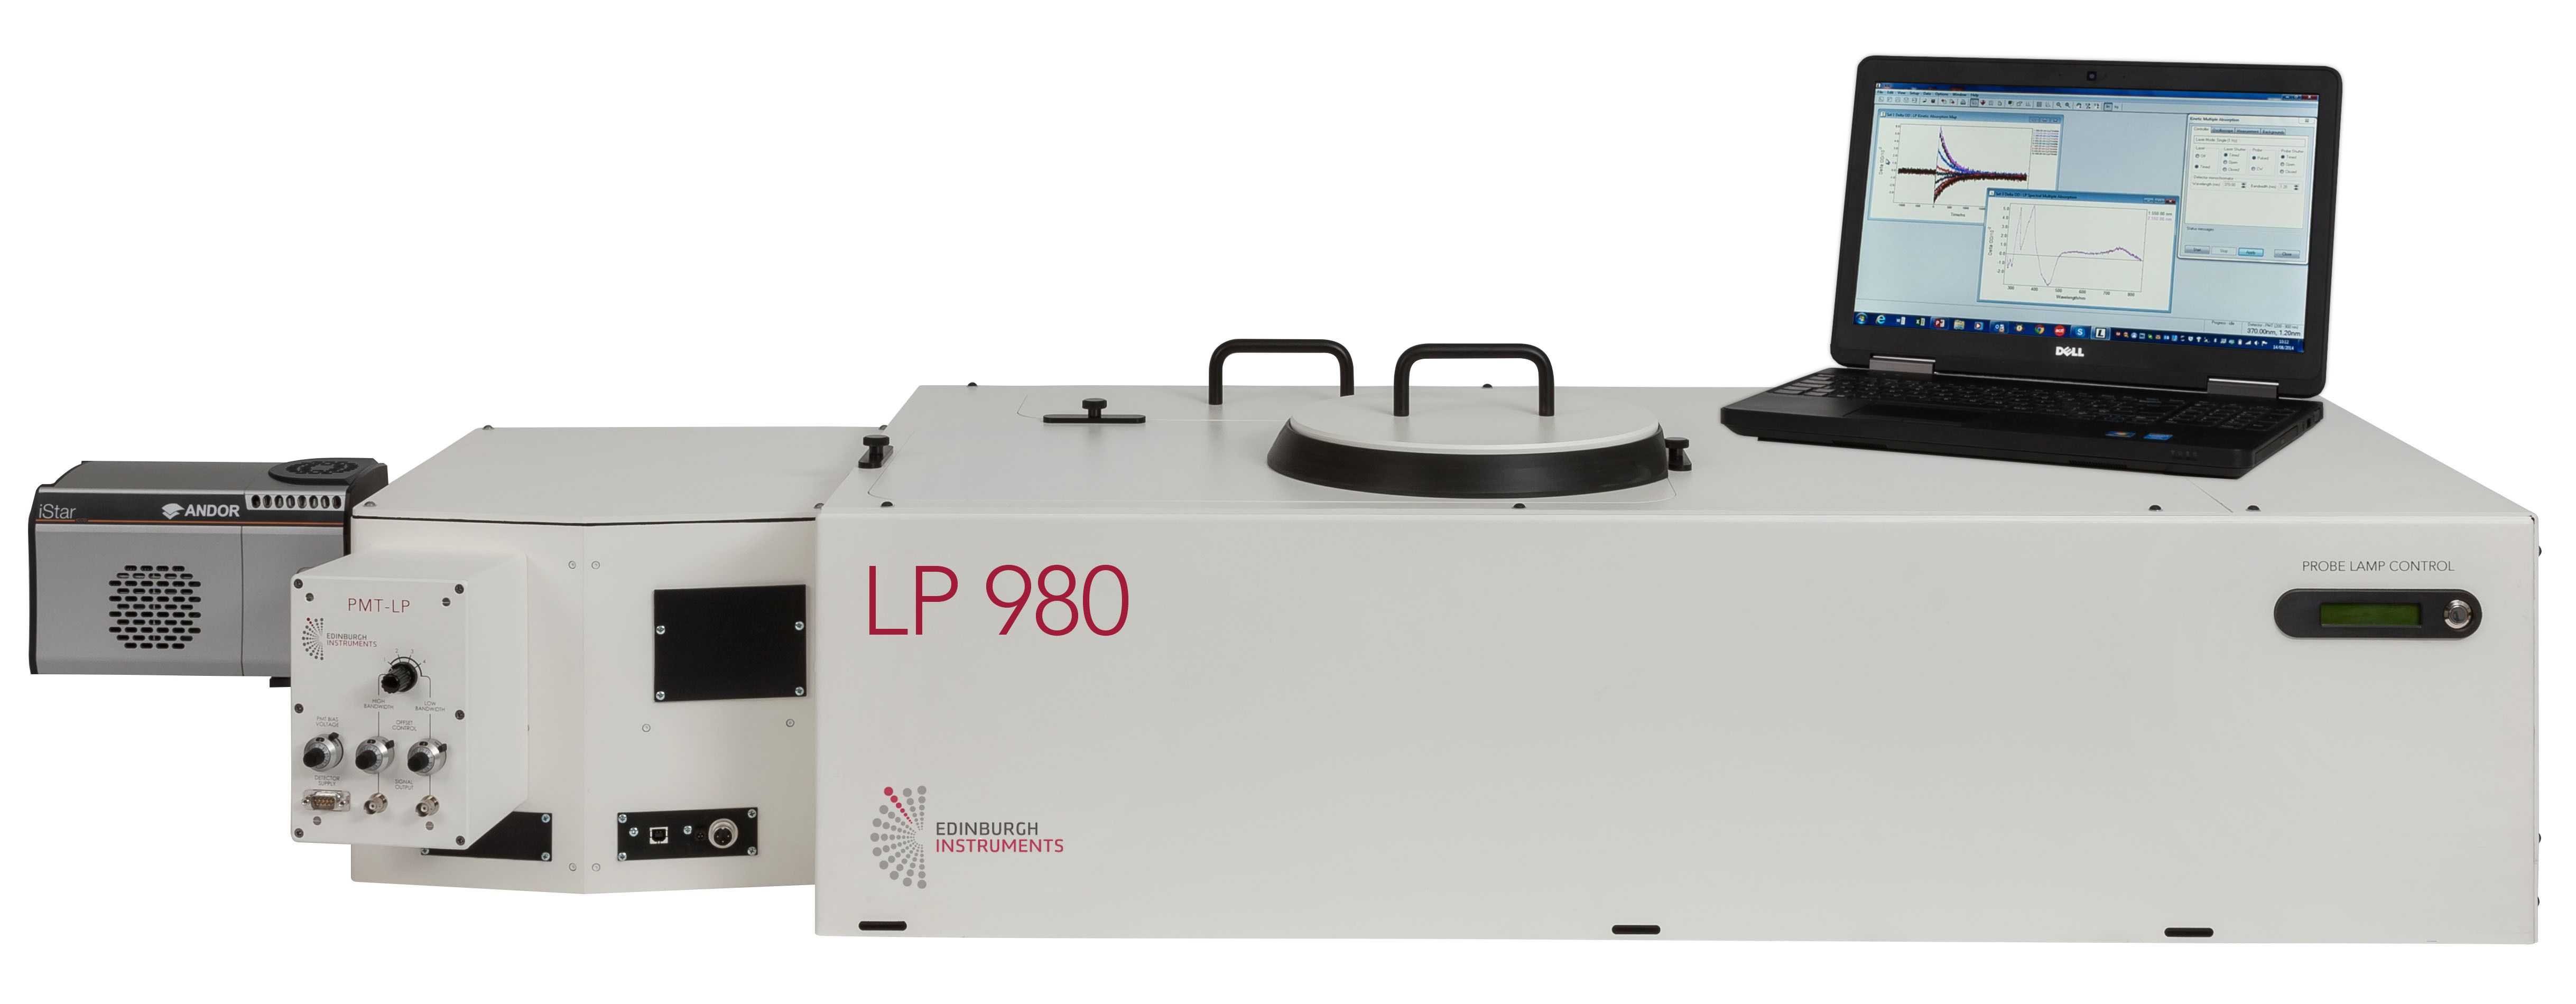 爱丁堡仪器最新产品lp980激光闪光光解仪